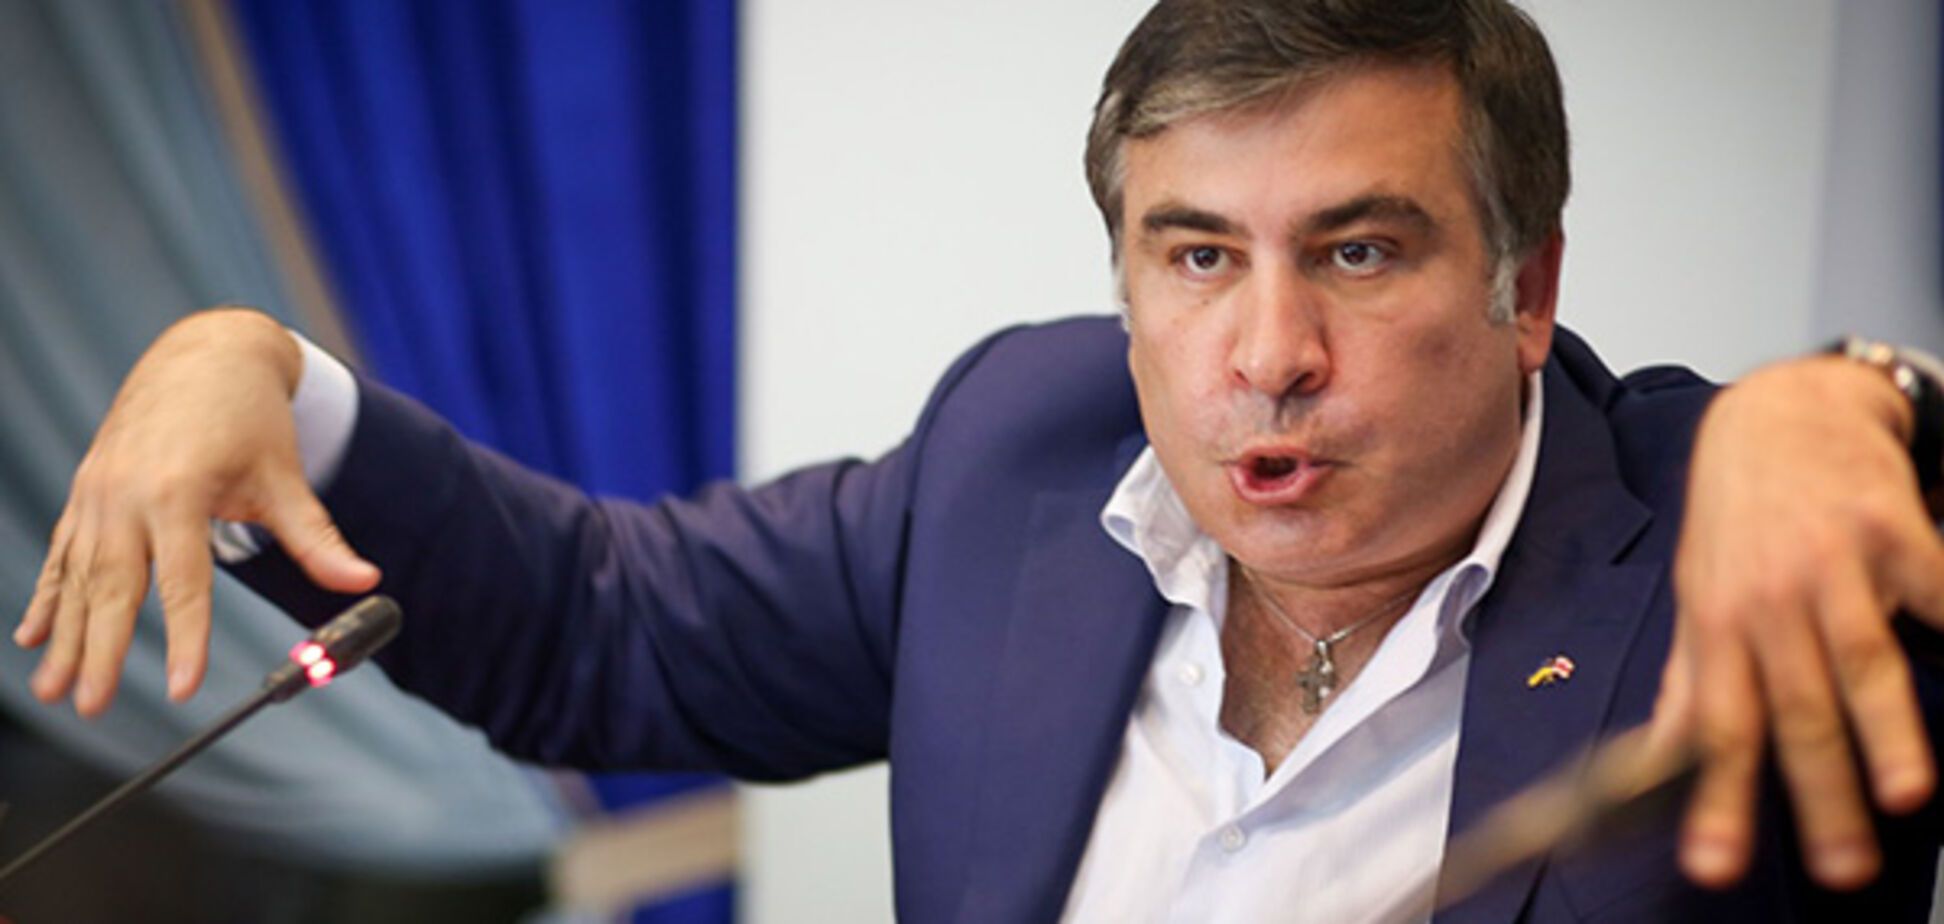  Пора заканчивать этот цирк с Саакашвили